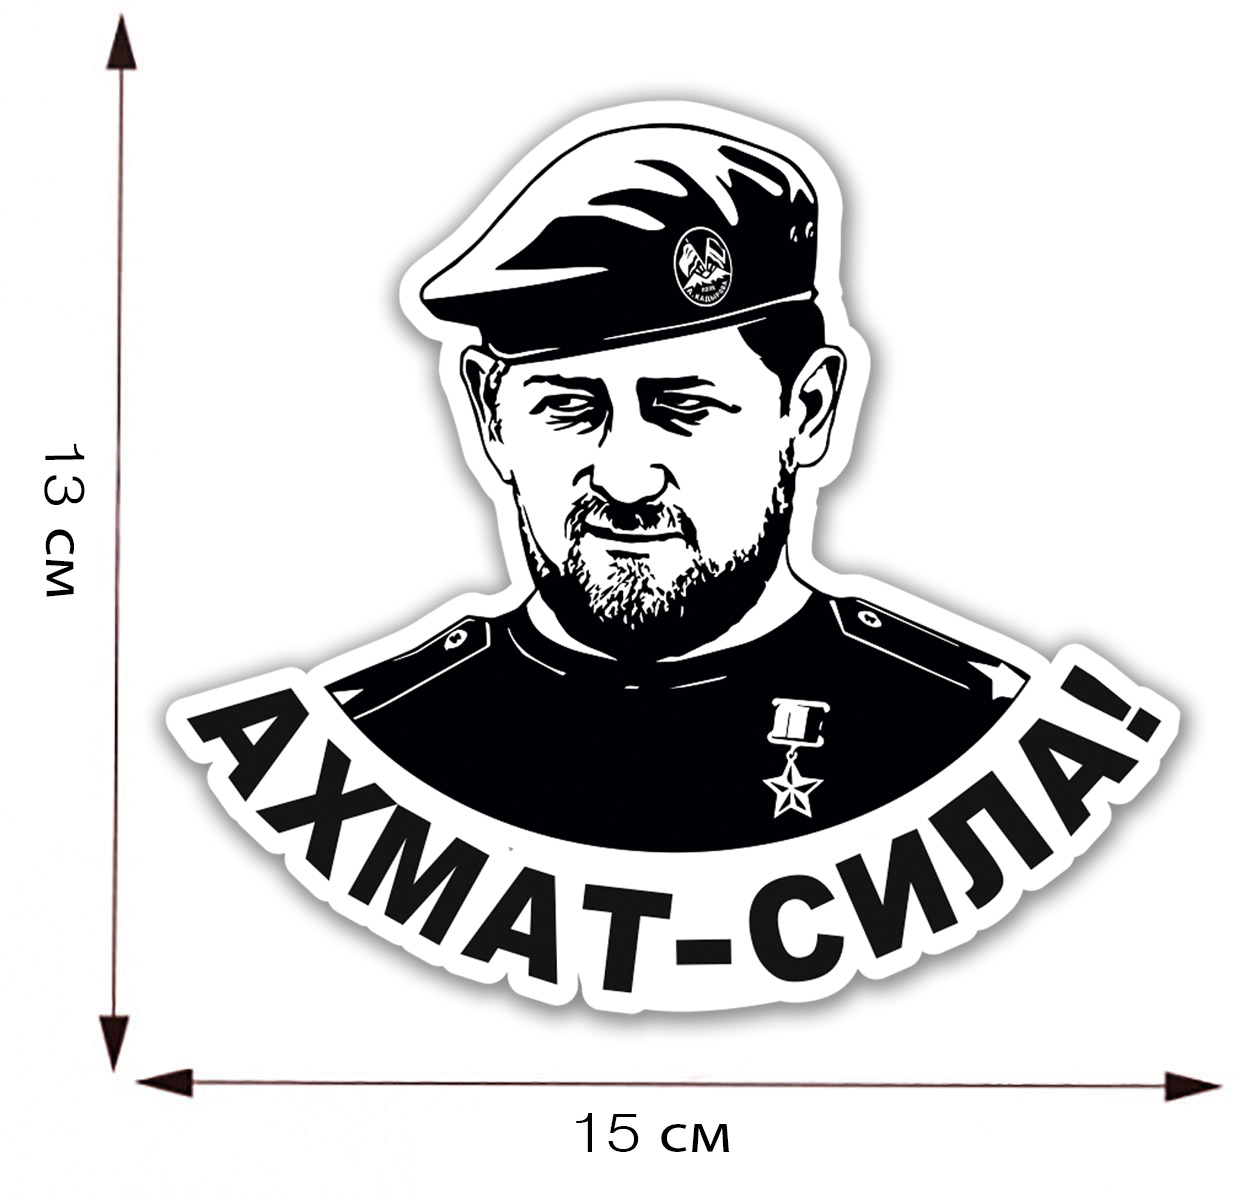 Наклейка "Ахмат - Сила!" с портретом Рамзана Кадырова - размер